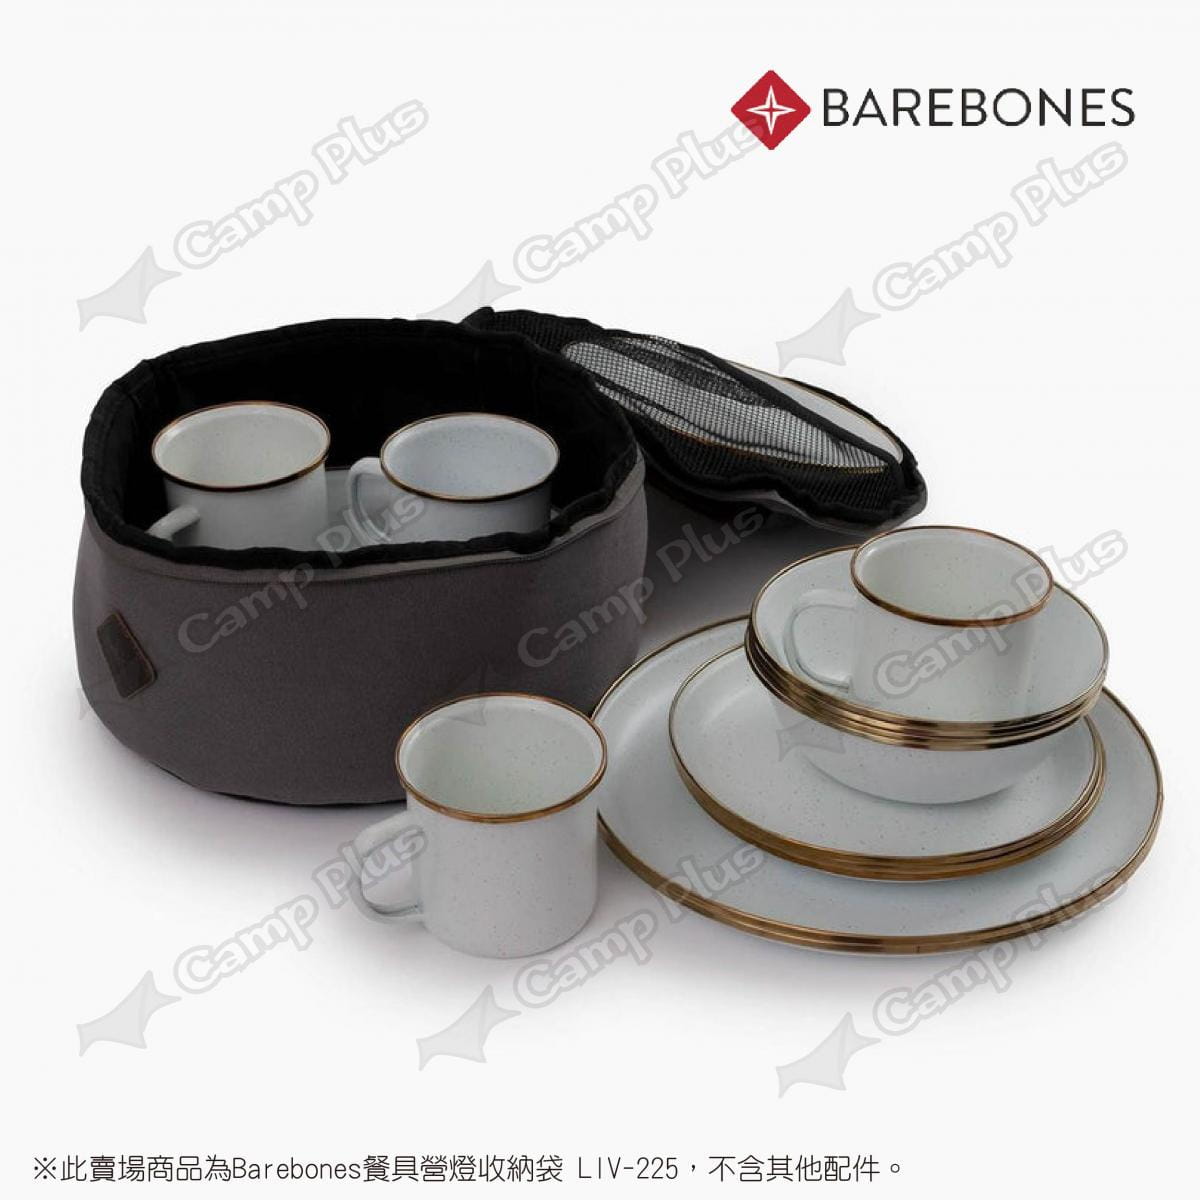 【Barebones】餐具營燈收納袋 LIV-225 (悠遊戶外) 5